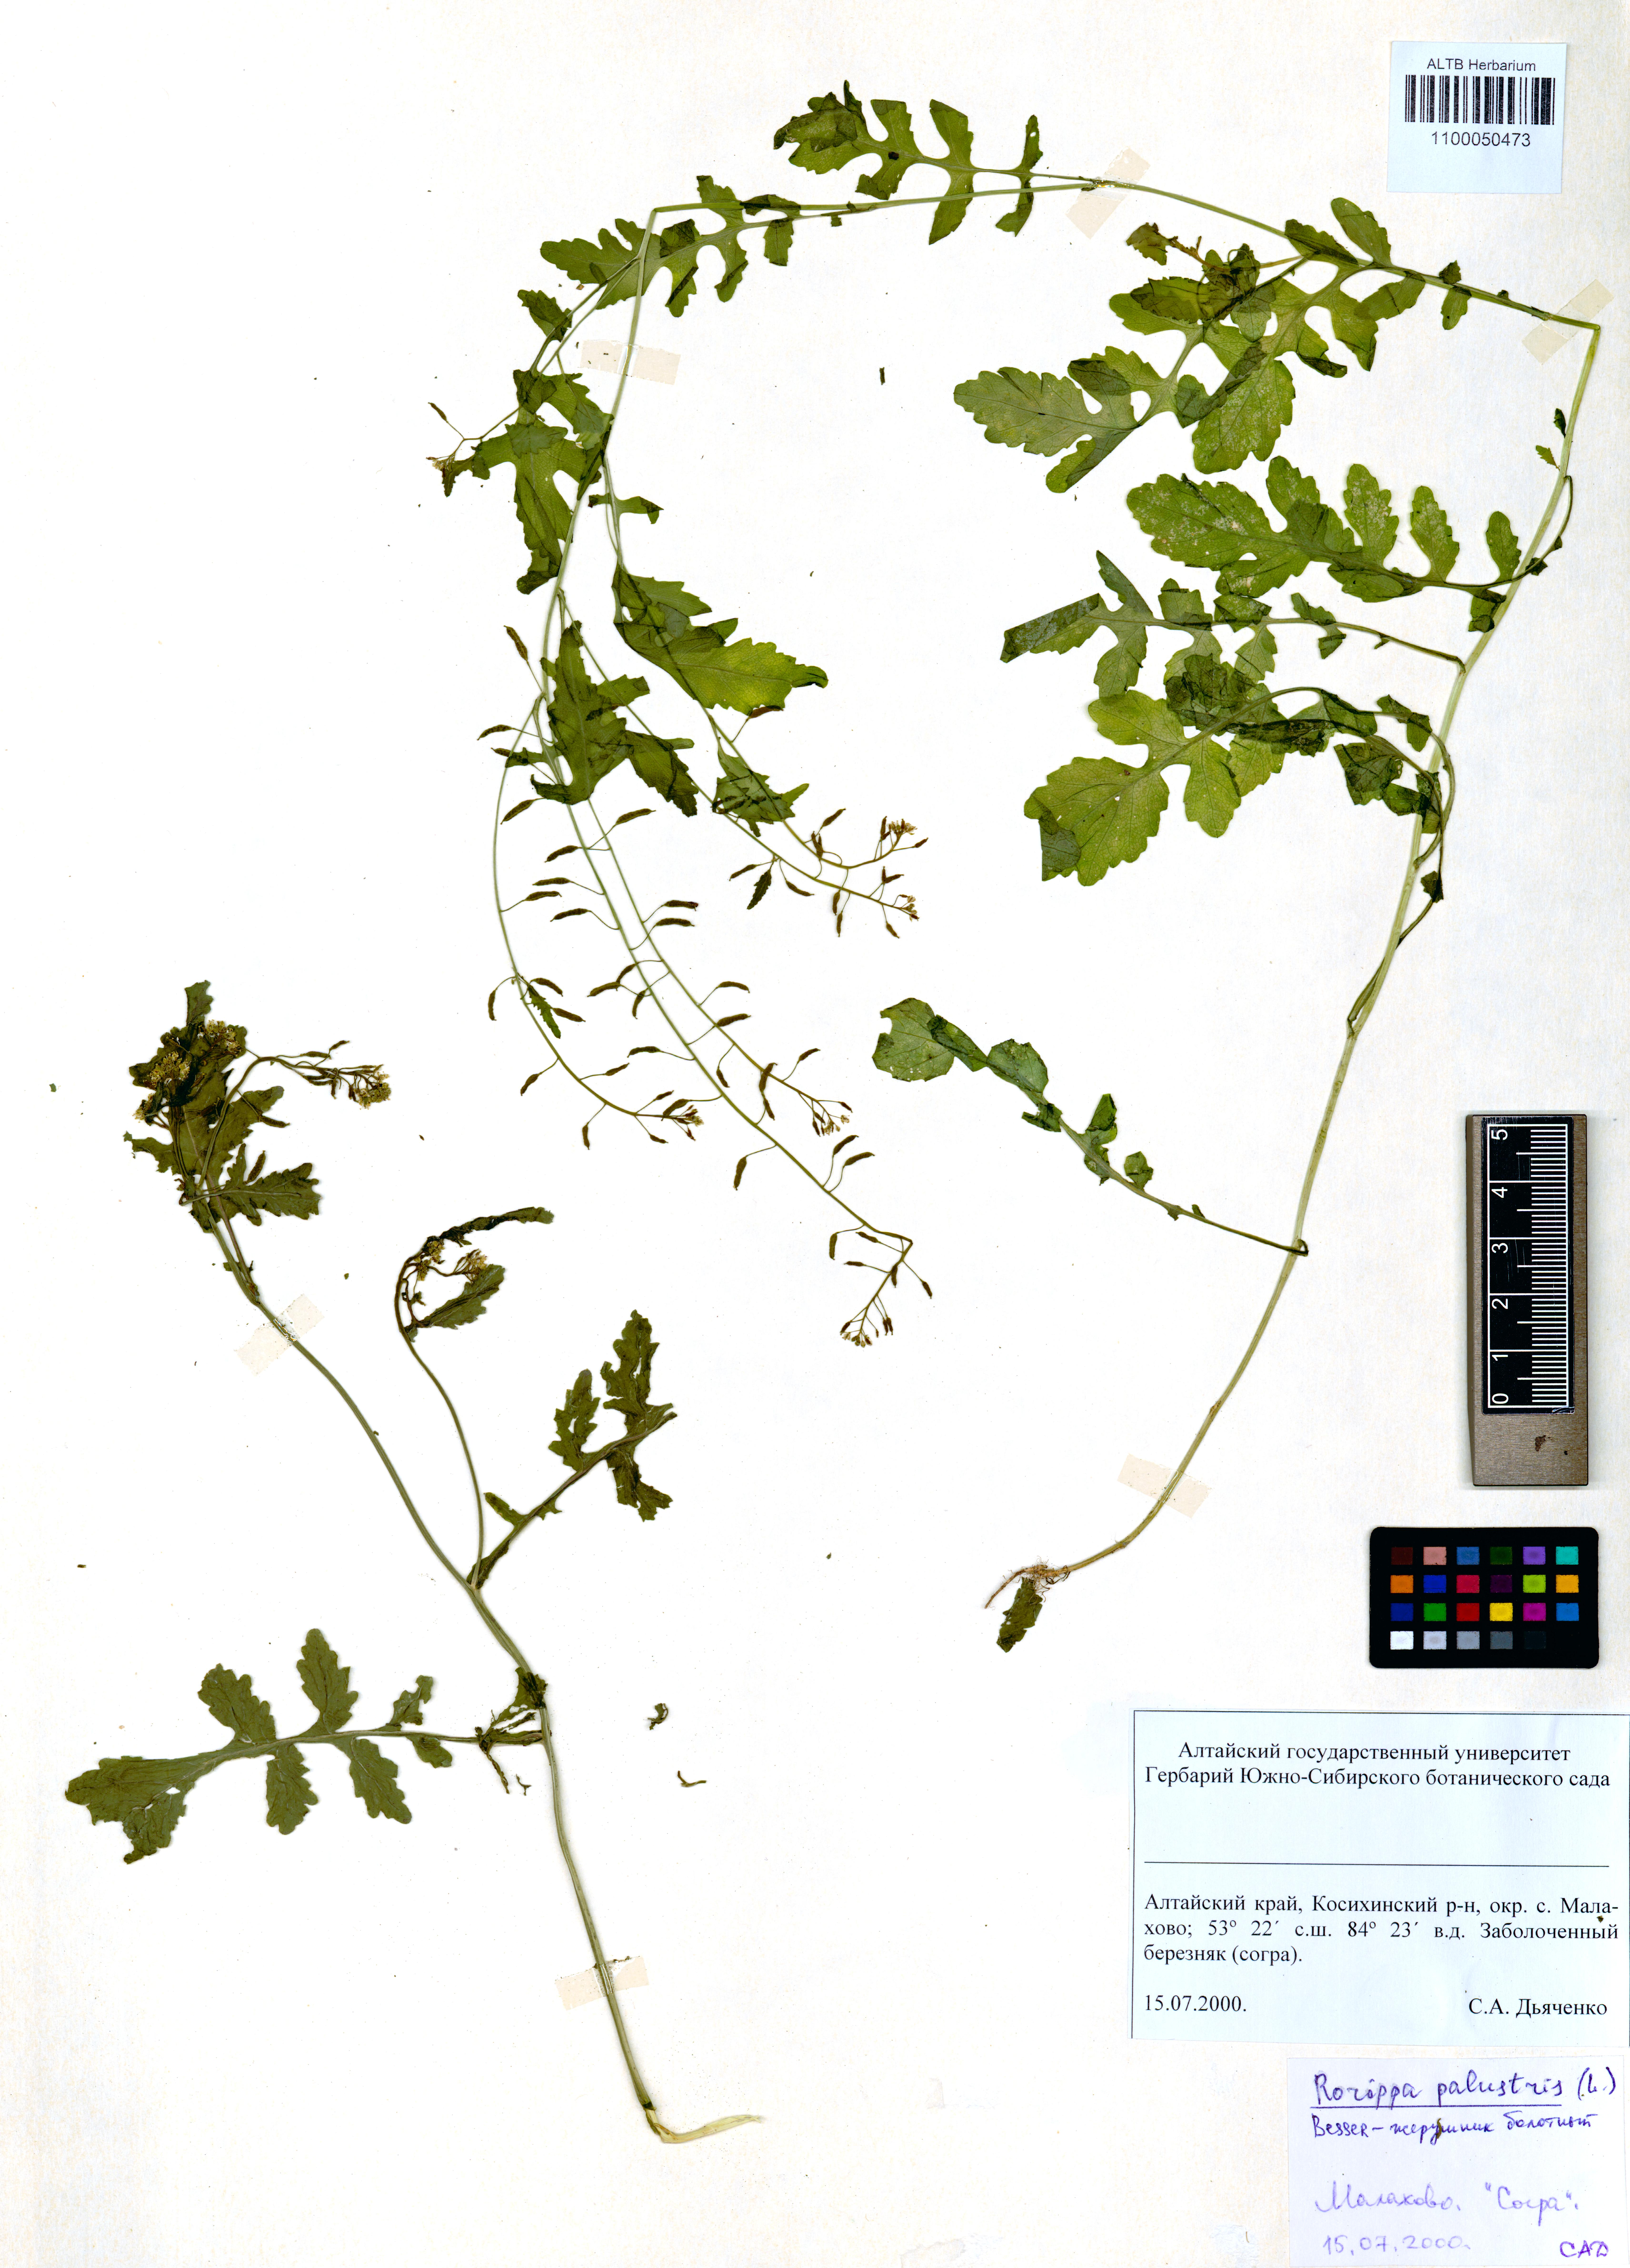 Rorippa palustris Besser